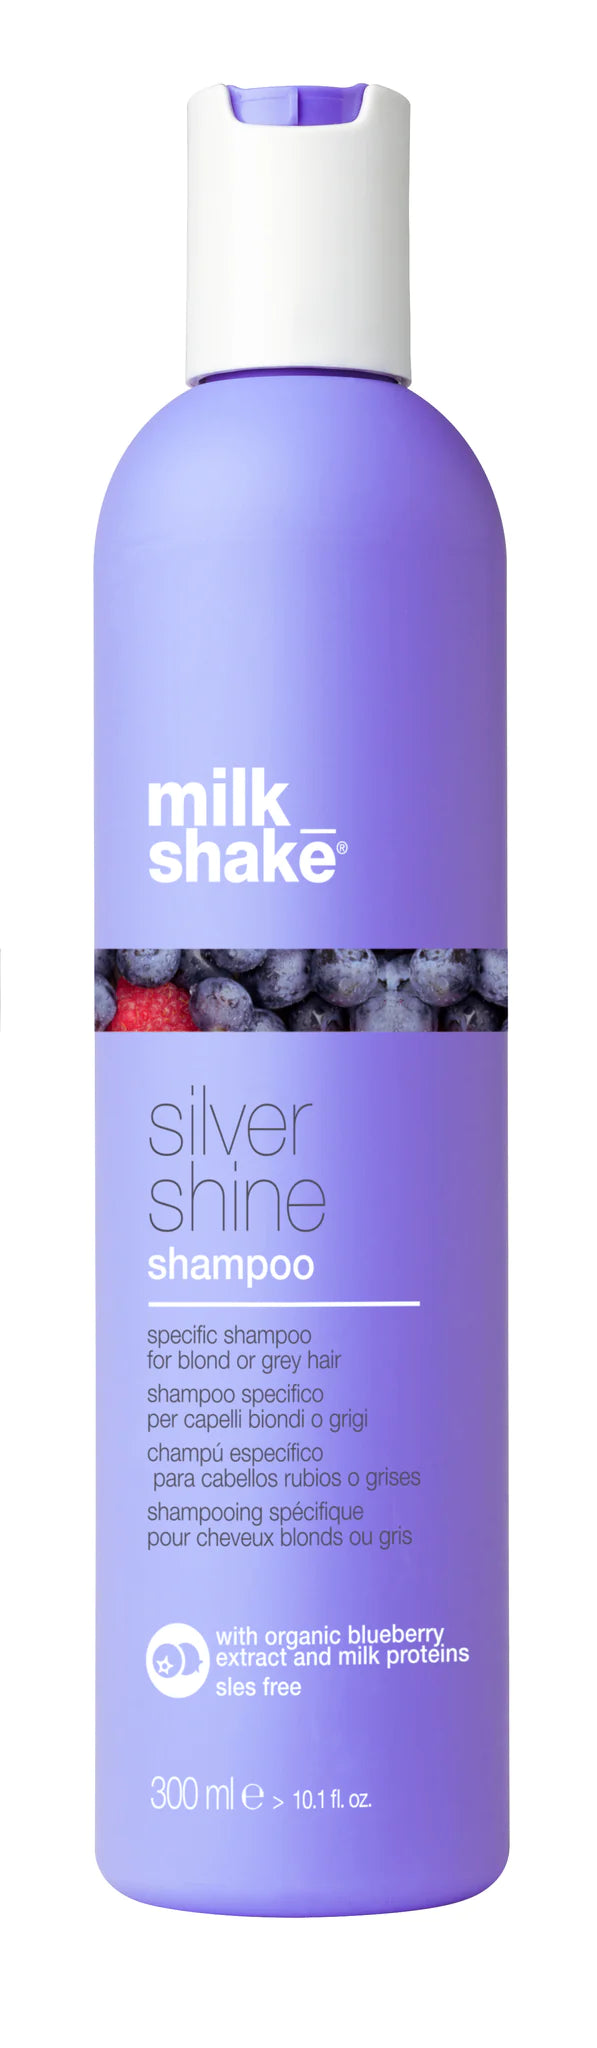 Milkshake silver shine shampoo (DARK)